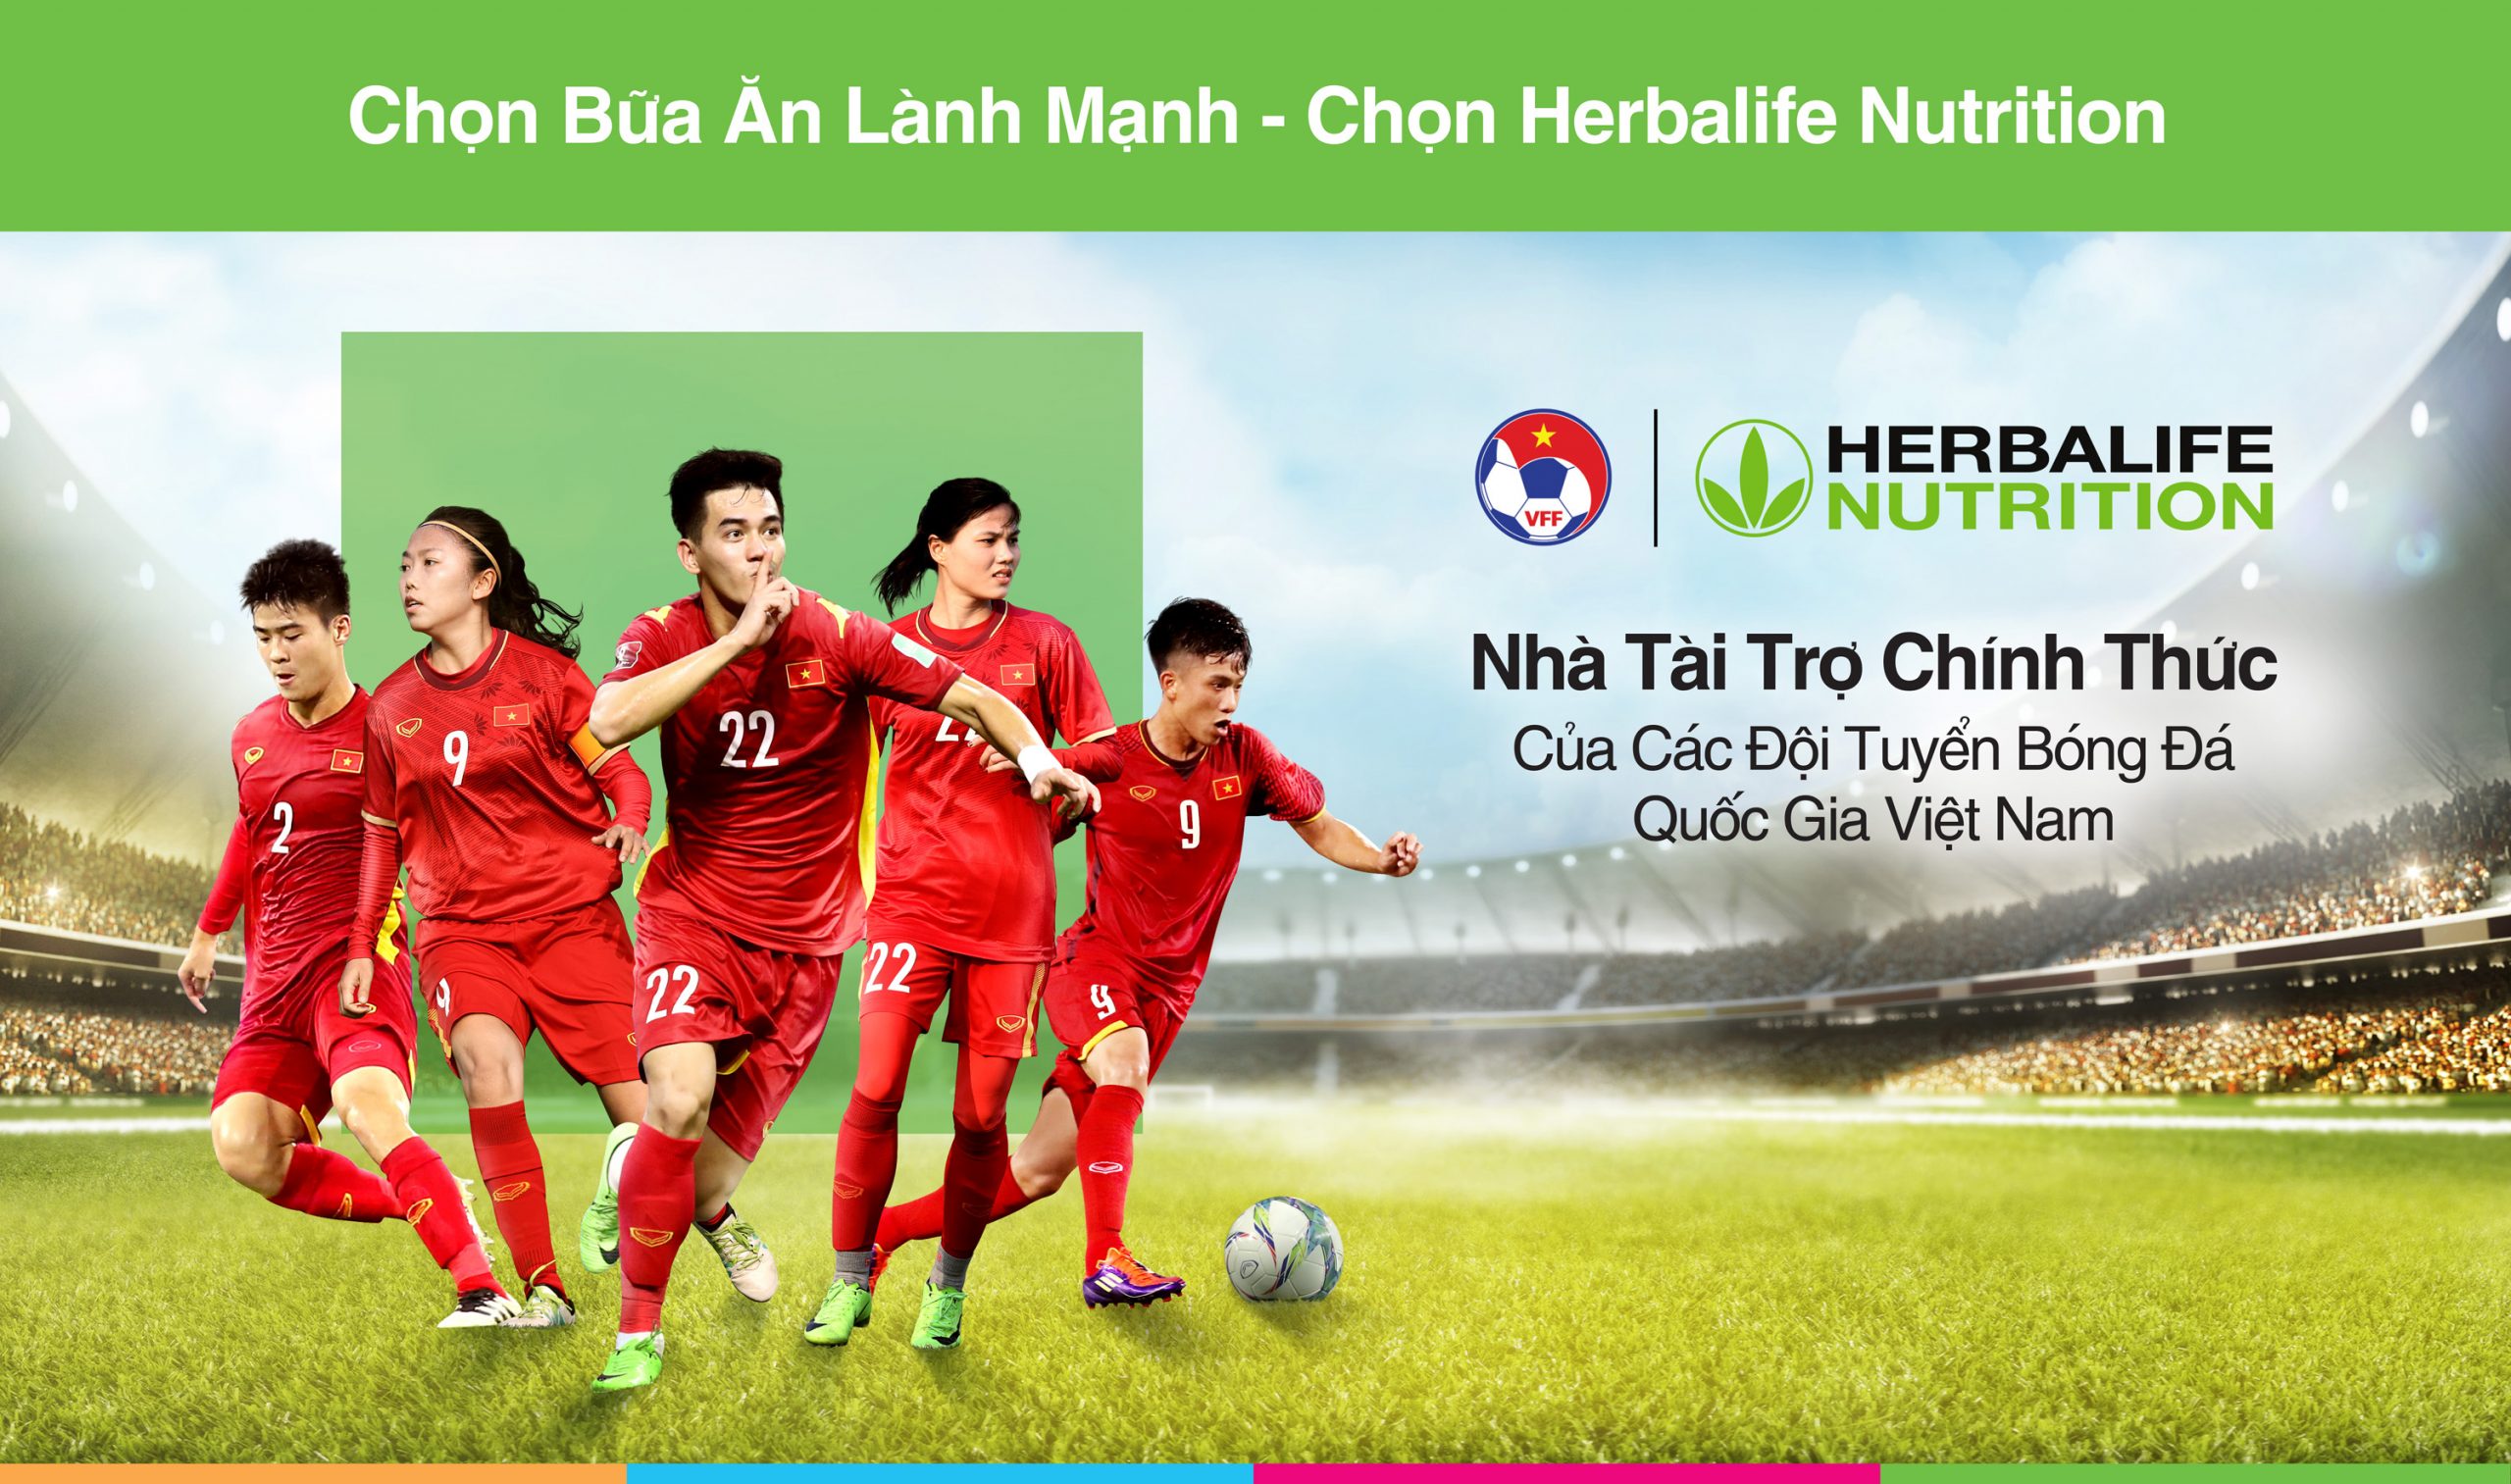 Herbalife Nutrition Đồng hành cùng thể thao Việt Nam